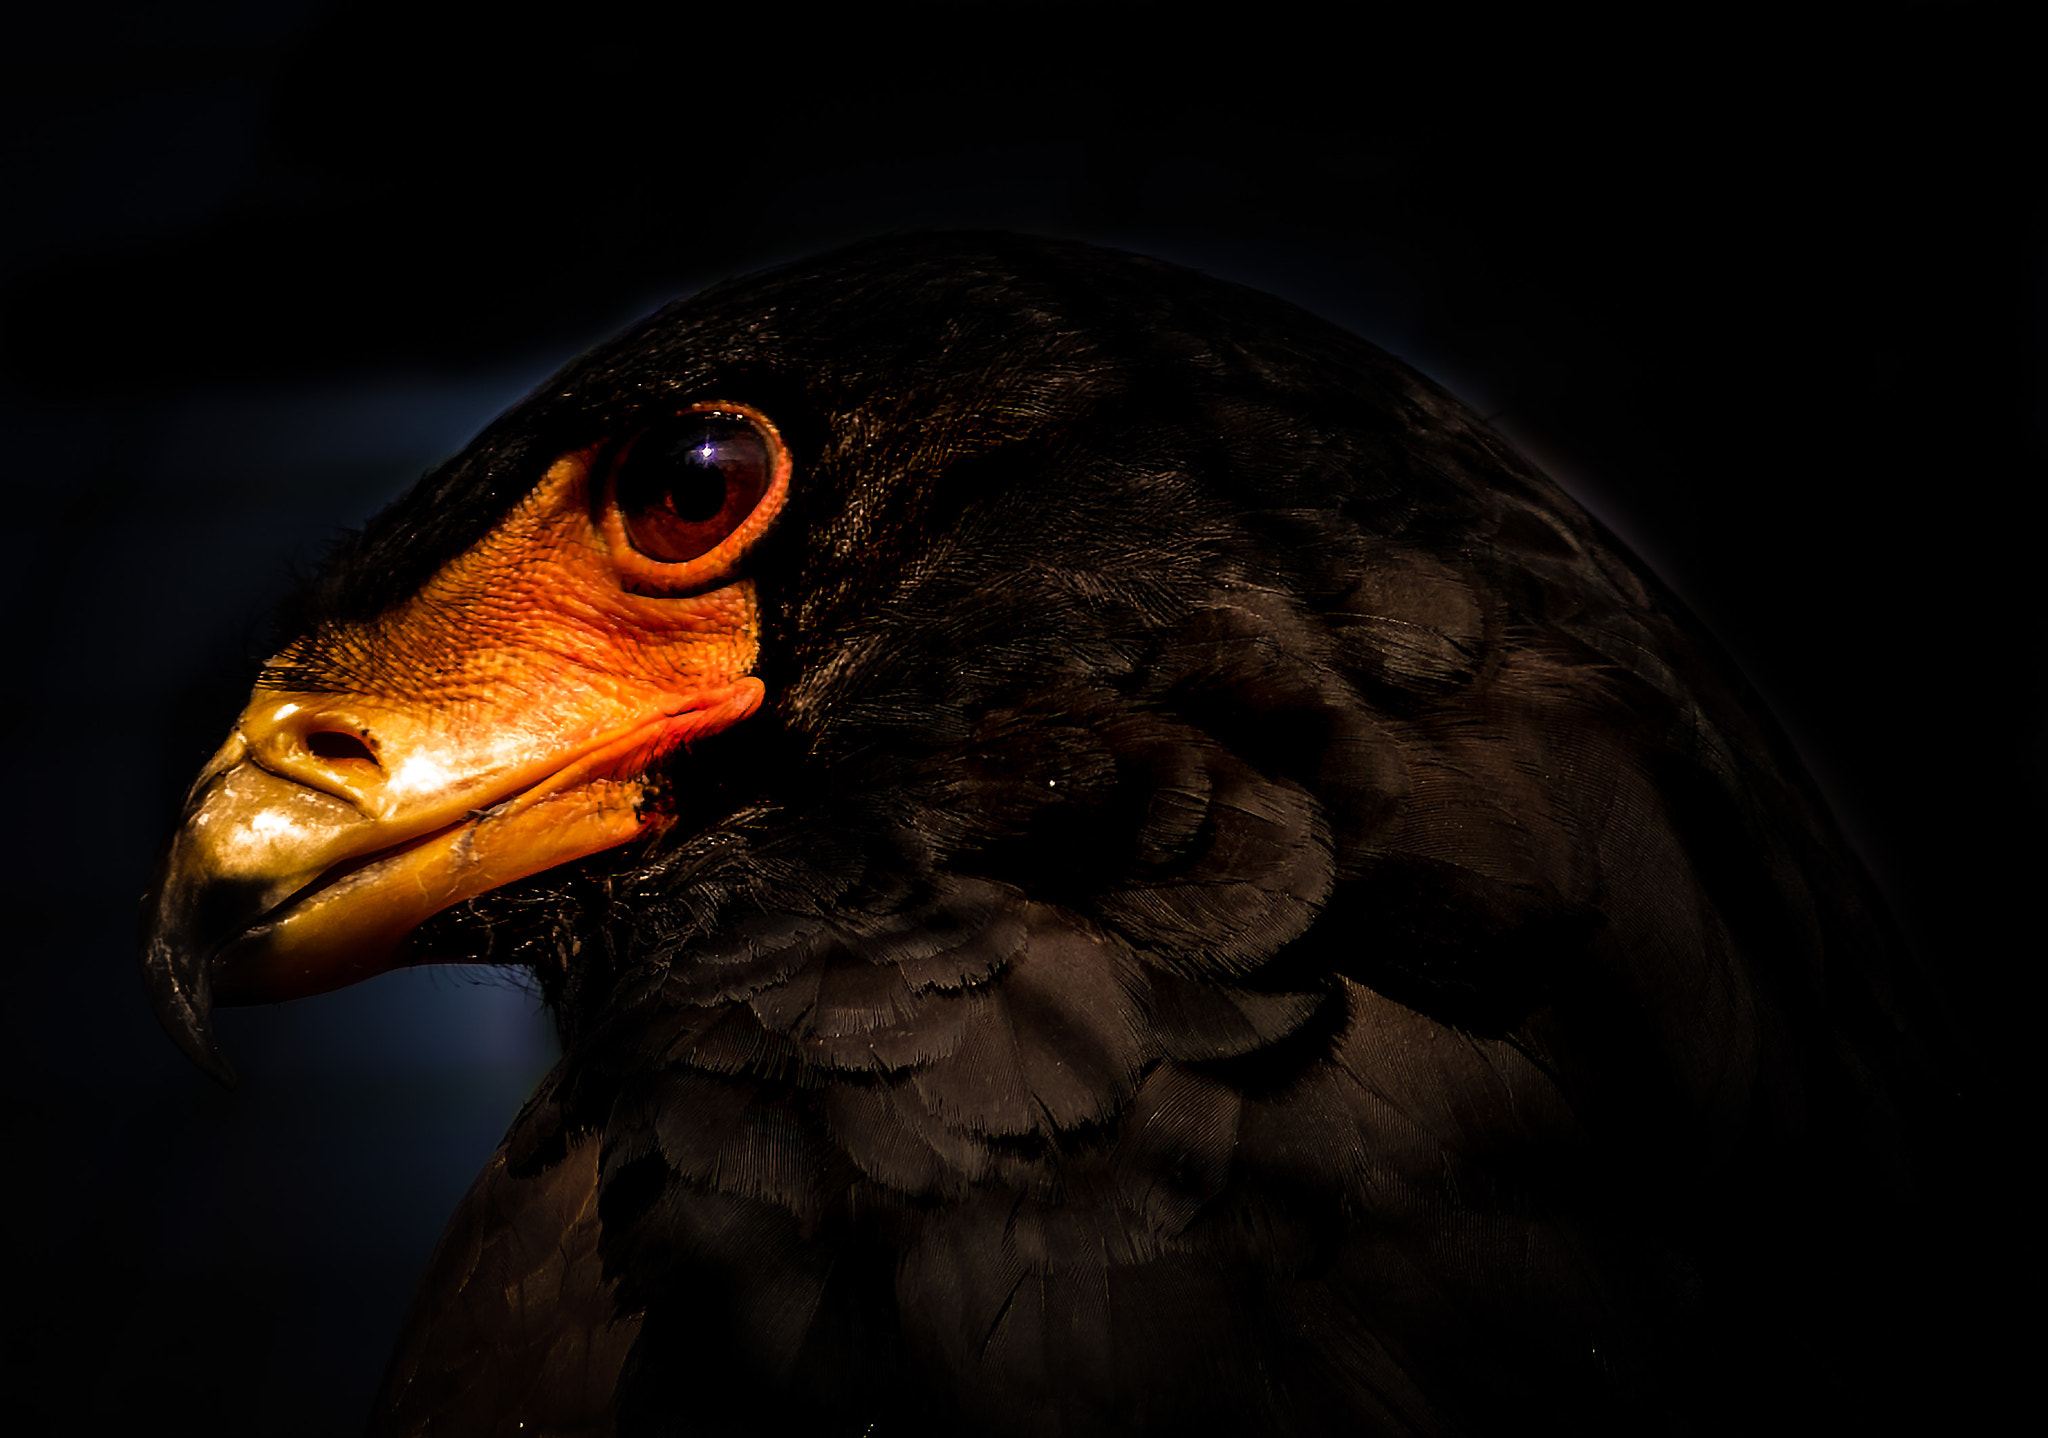 AF Nikkor 180mm f/2.8 IF-ED sample photo. Bateleur eagle profile photography